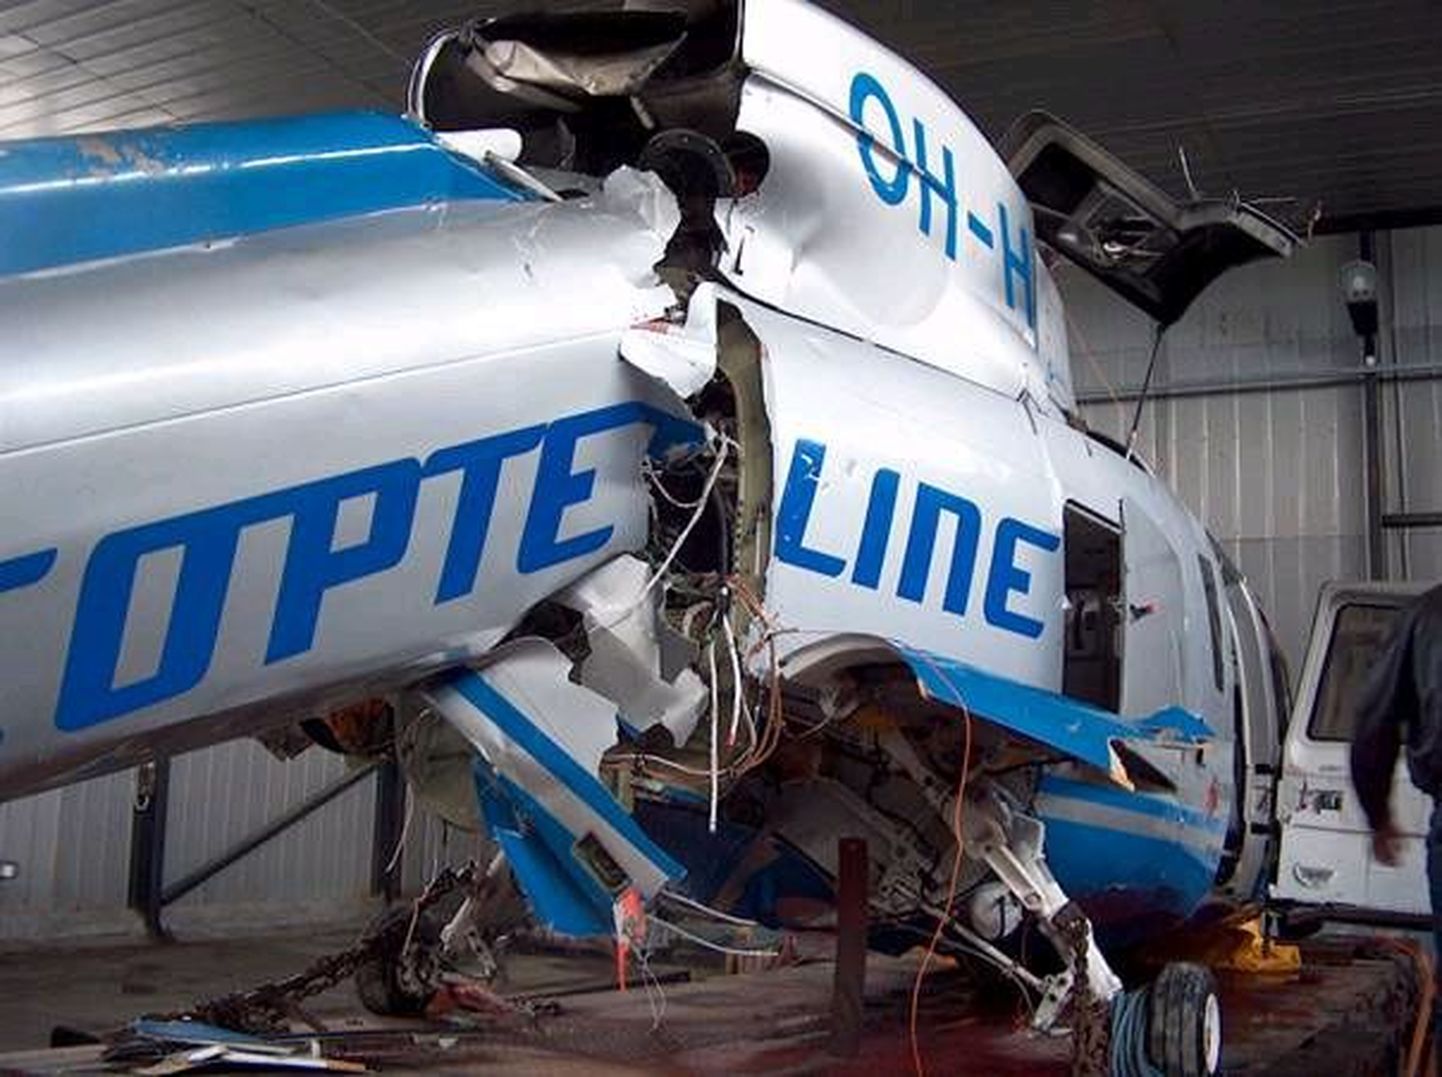 Обломки вертолета S-76 компании Copterline в ангаре Таллиннского аэропорта.